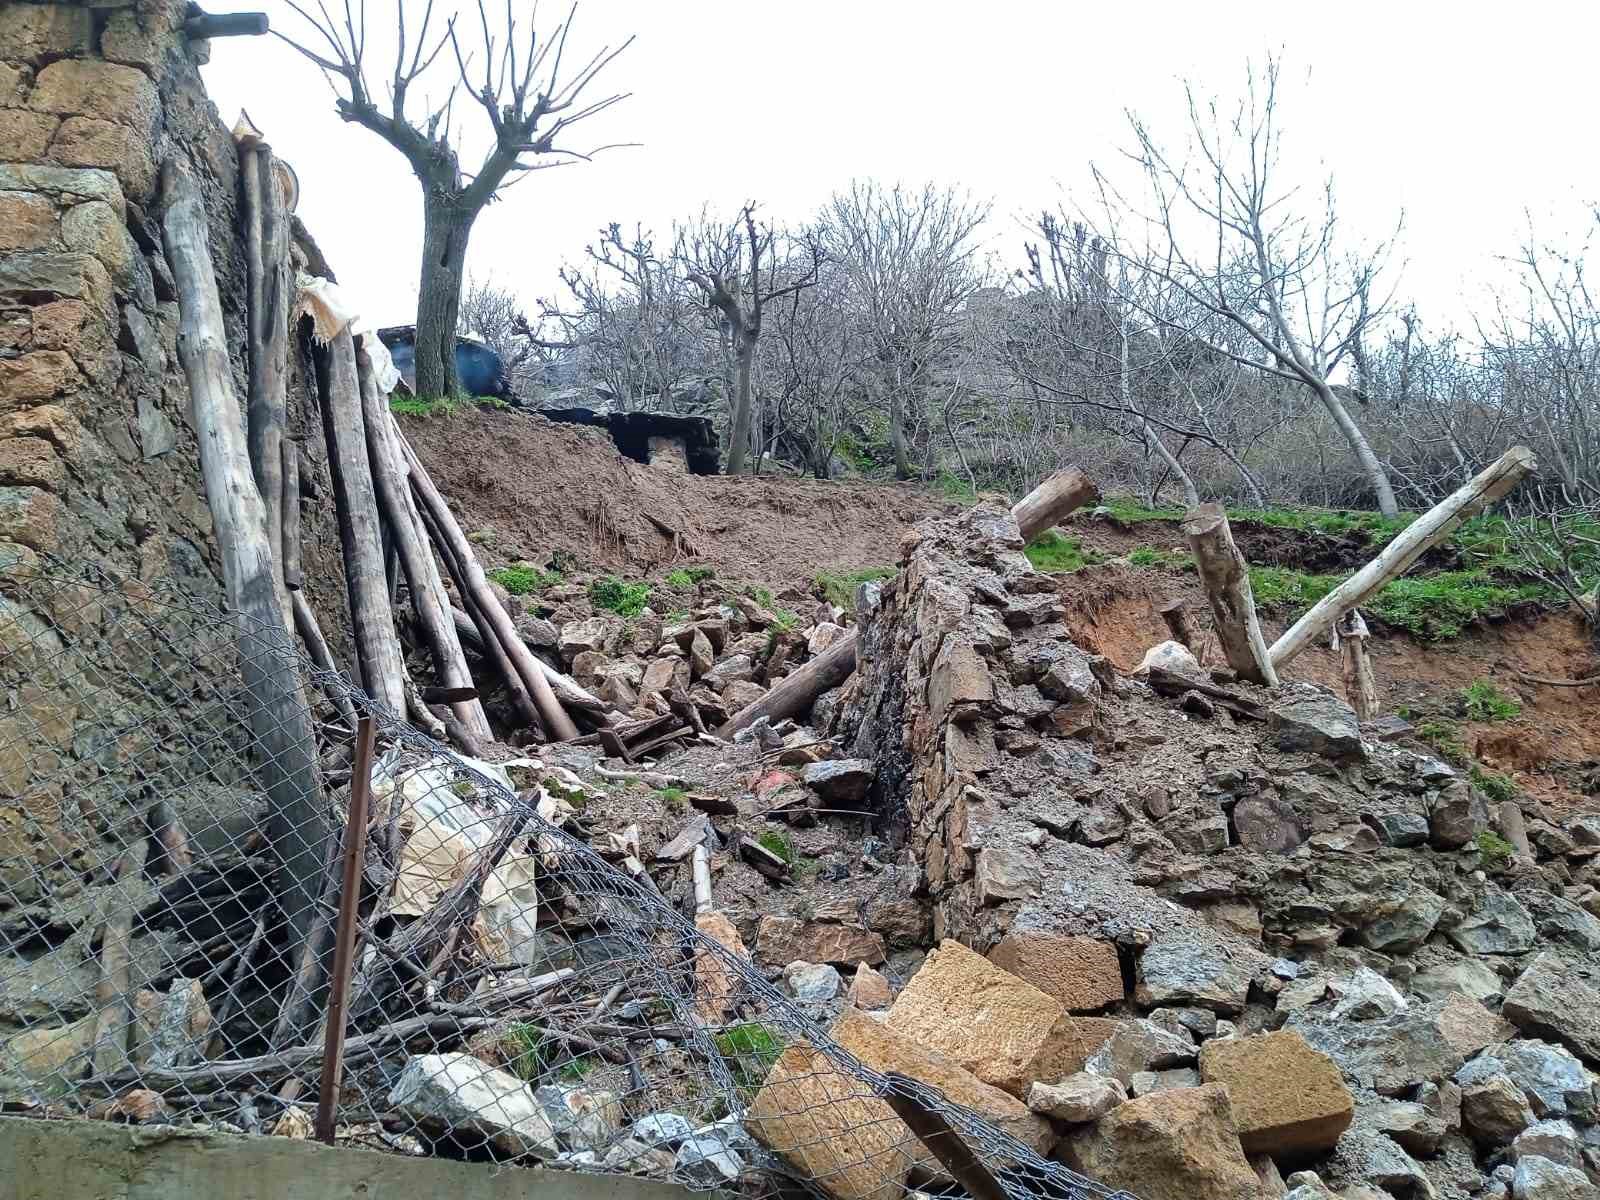 Batman’da sağanak yağış nedeniyle iki katlı kerpiç ev çöktü
